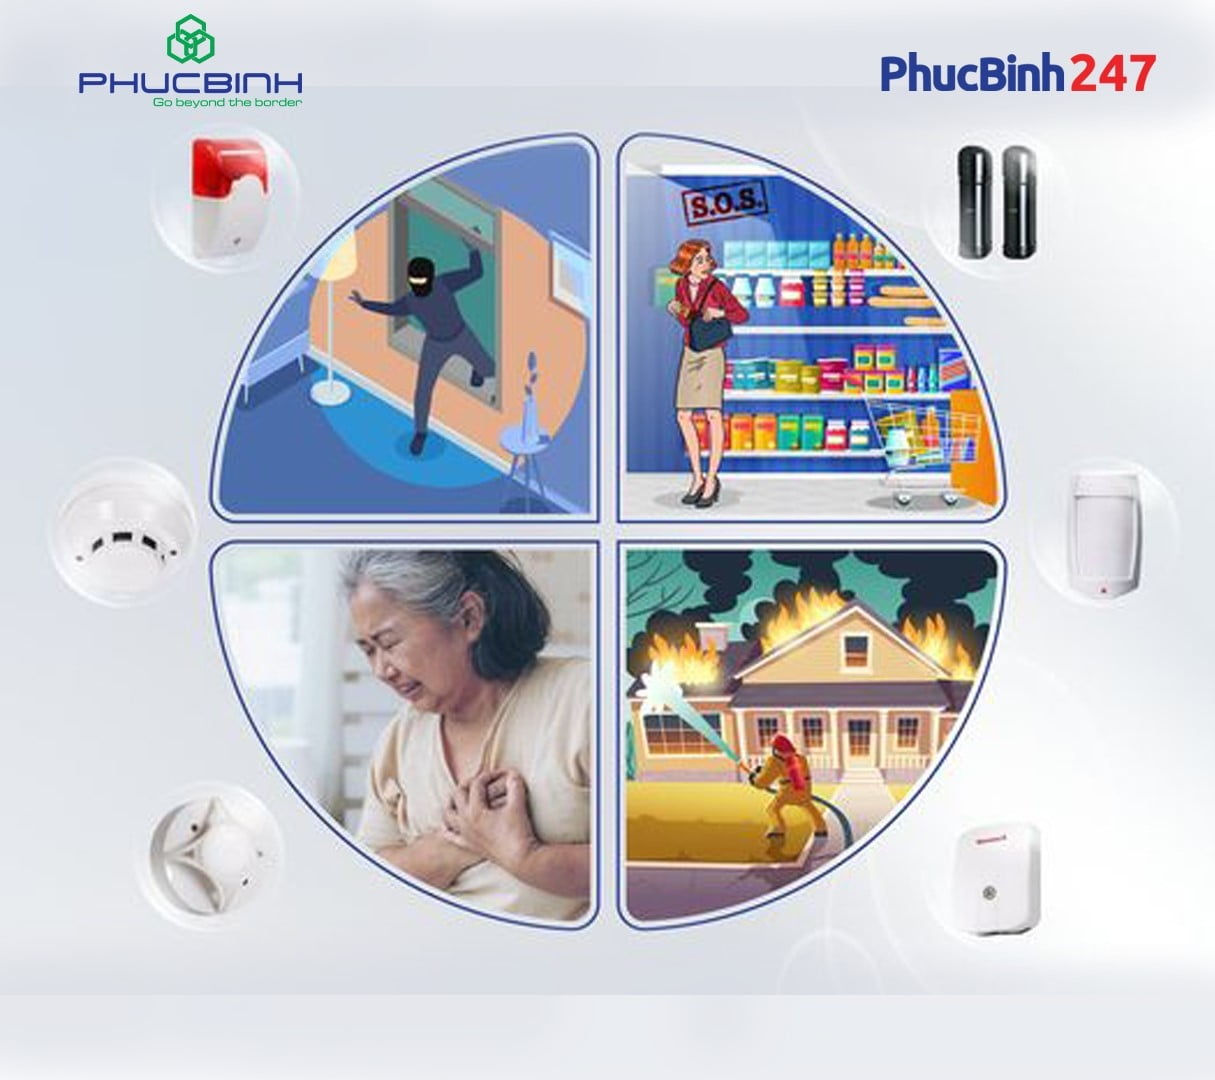 Dịch vụ cho thuê báo động trực tuyến Phucbinh247 hiện đại - an toàn - nhanh chóng